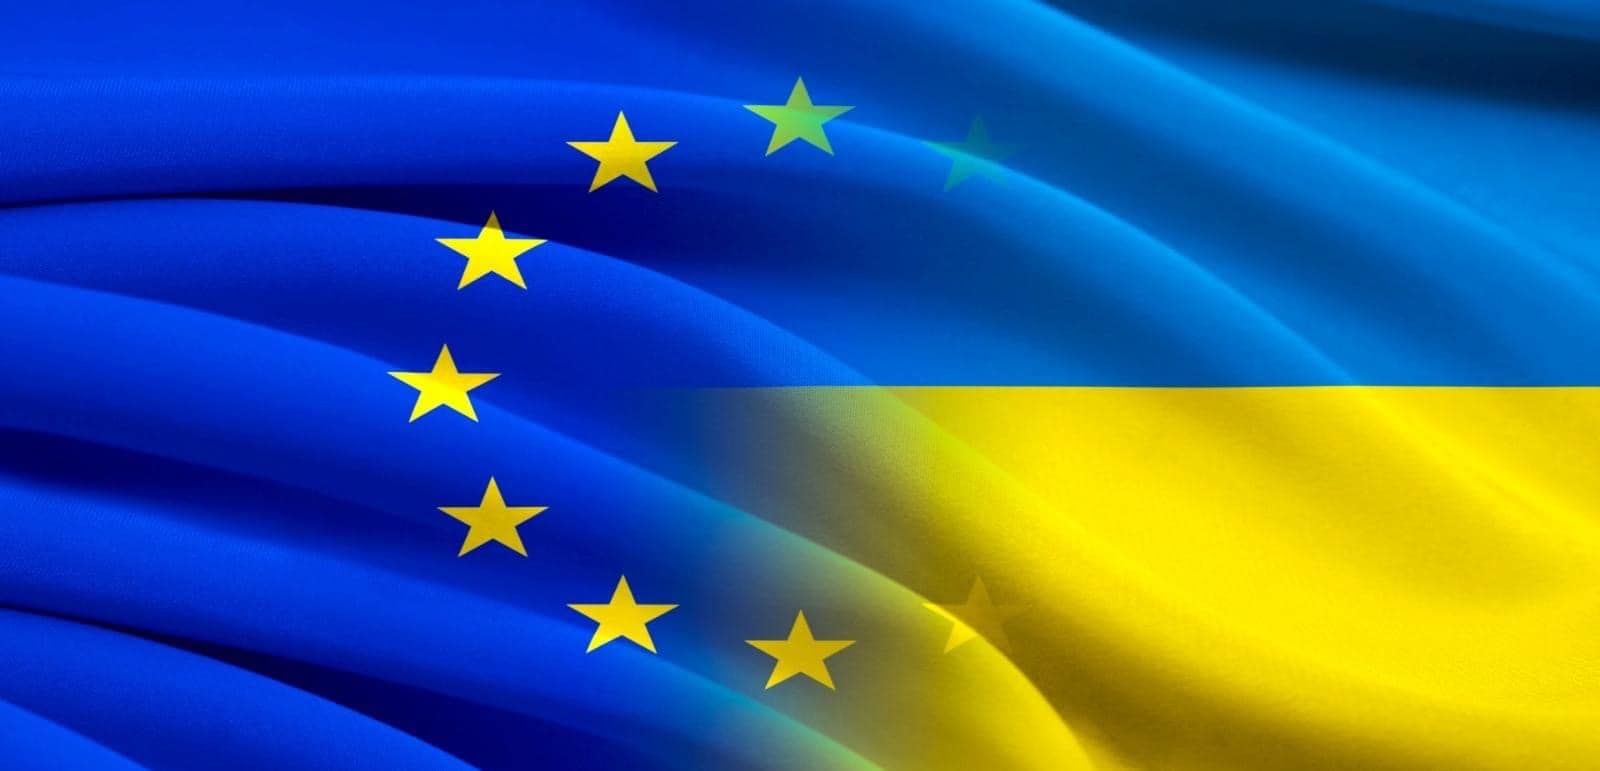 Сім умов для початку переговорів щодо членства України в ЄС